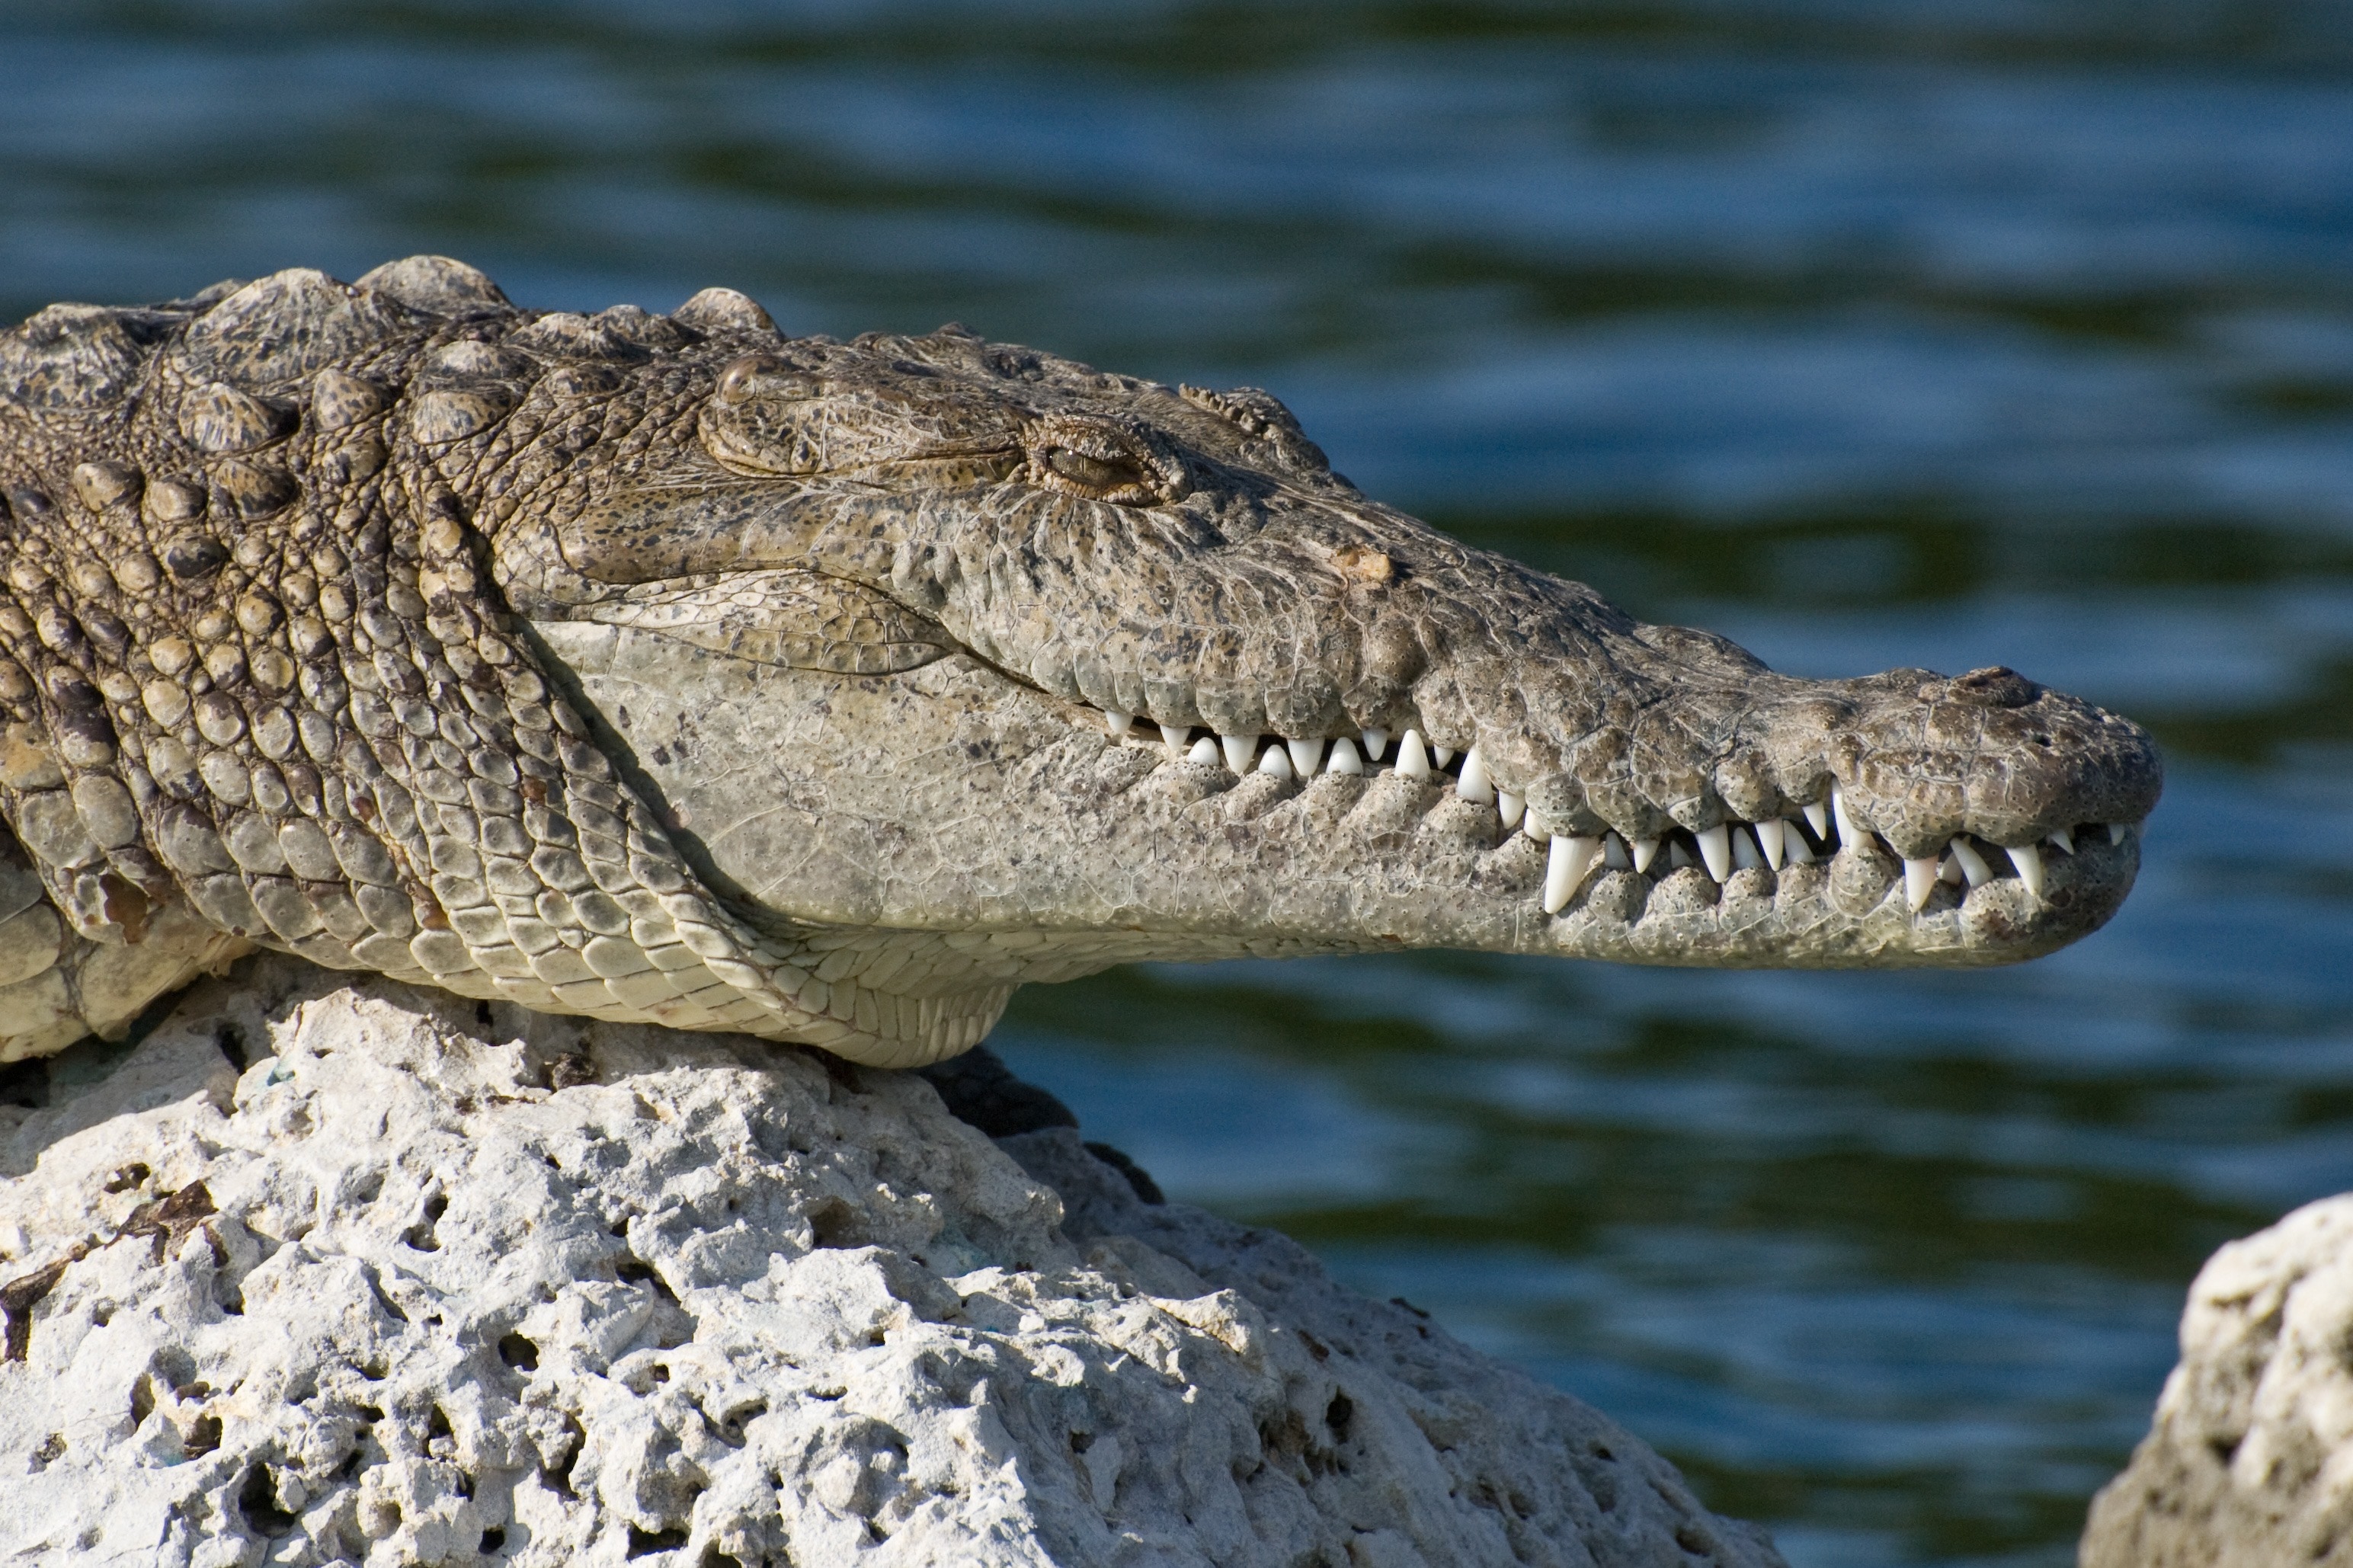 Florida, Biscayne National Park, one animal, danger